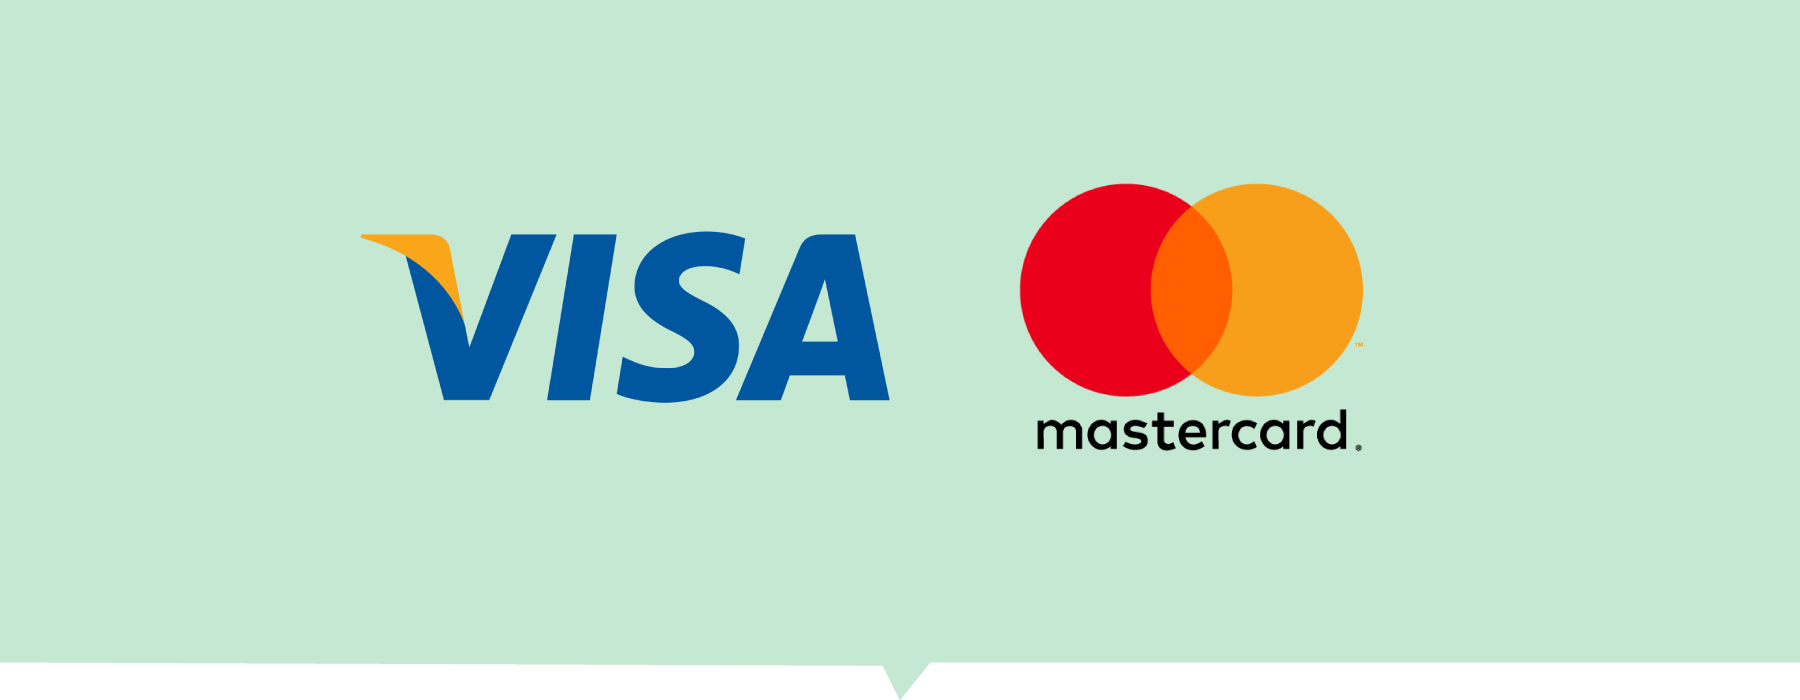 phương thức thanh toán thẻ ngân hàng visa mastercard